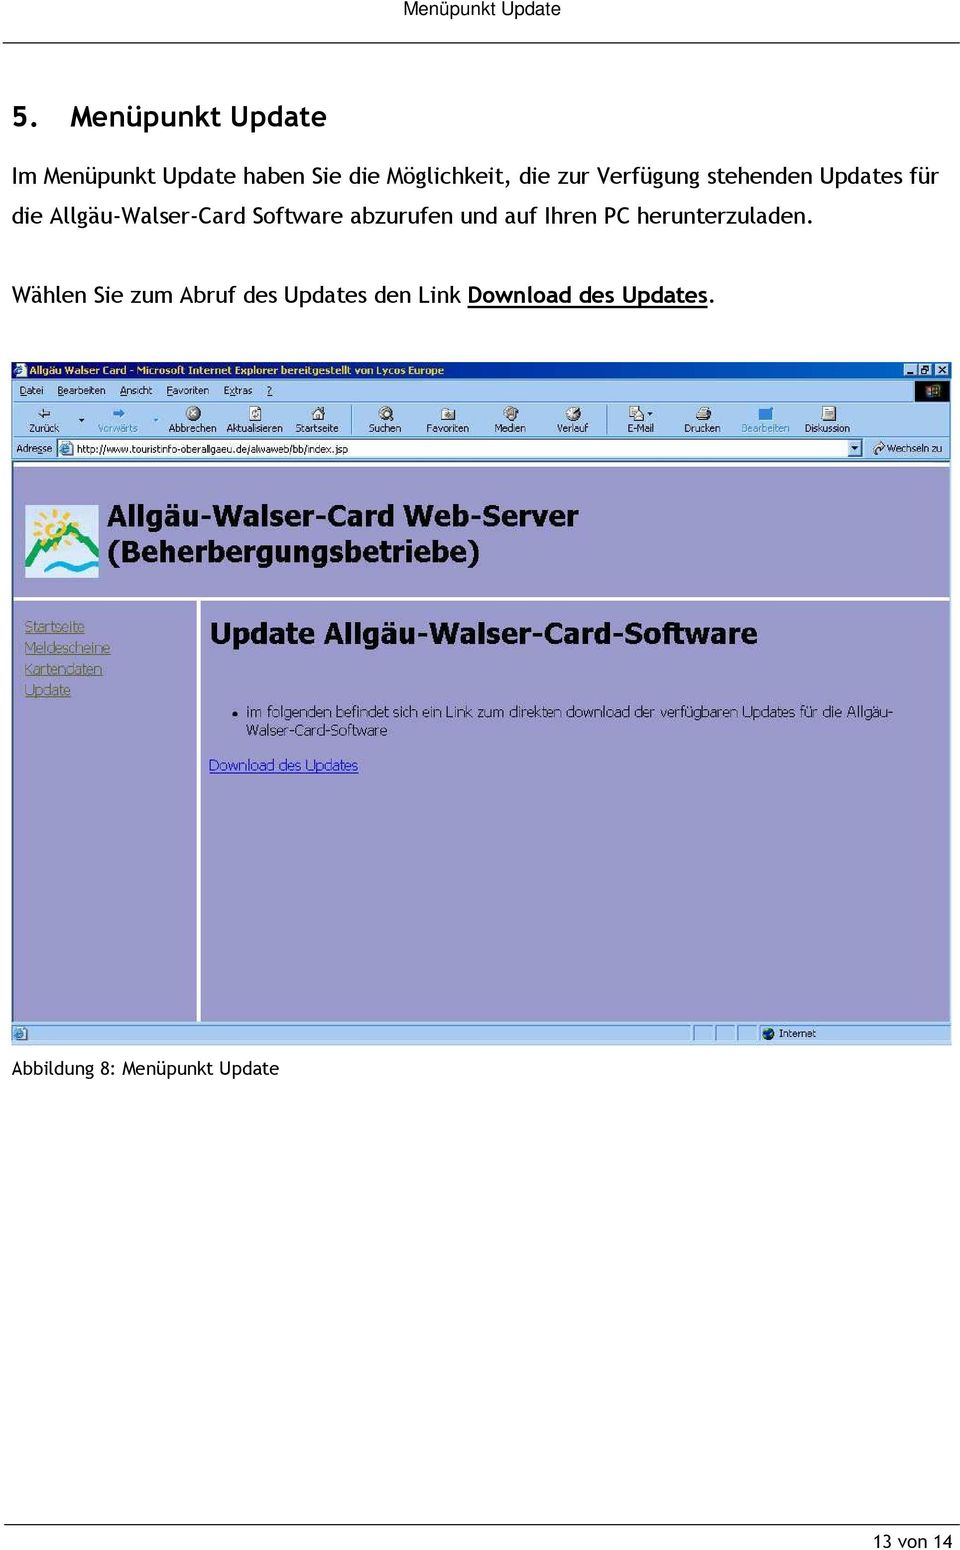 Verfügung stehenden Updates für die Allgäu-Walser-Card Software abzurufen